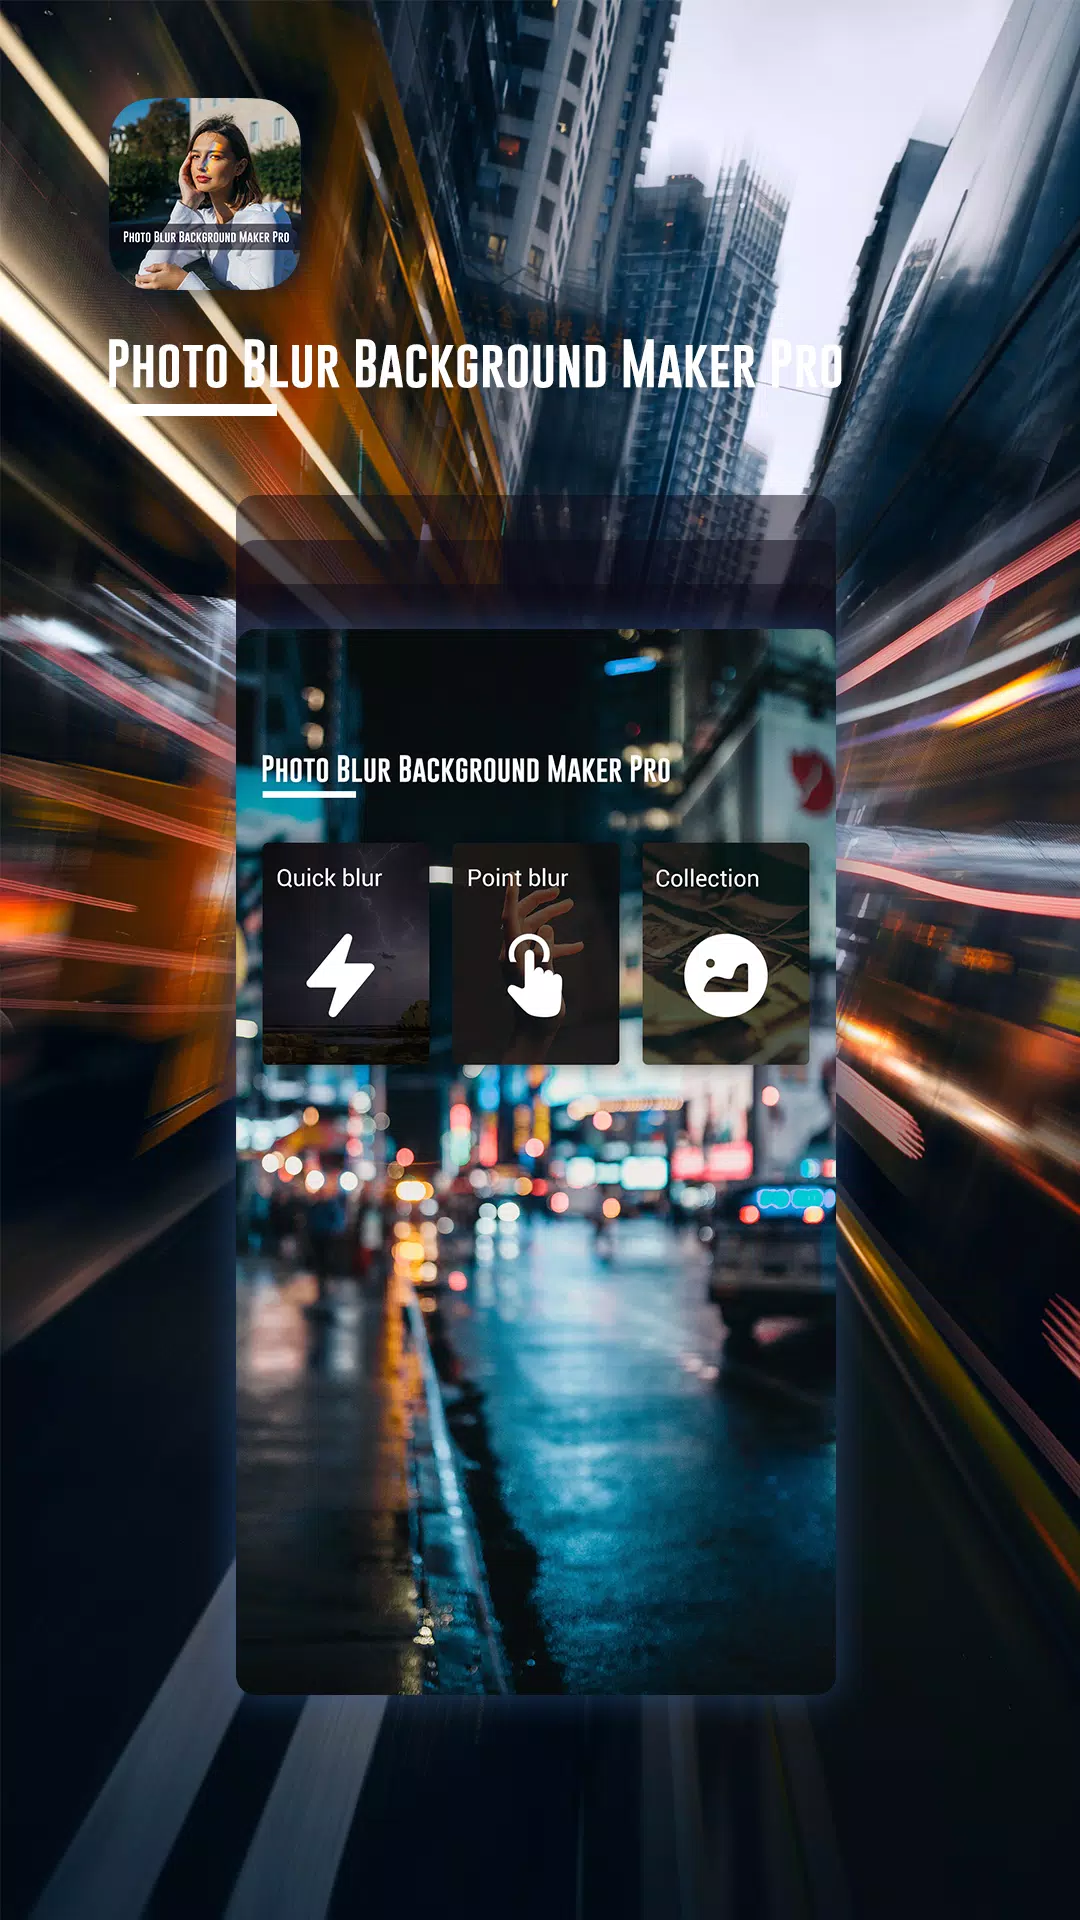 Photo Blur Background Maker Pro APK for Android Download - Ứng dụng tạo nền chụp ảnh mờ chuyên nghiệp trên Android sẽ giúp bạn tạo ra những bức ảnh hoàn hảo với nền mờ đẹp mắt. Hãy tải ngay ứng dụng này và trải nghiệm sự khác biệt trong ảnh chụp của bạn.